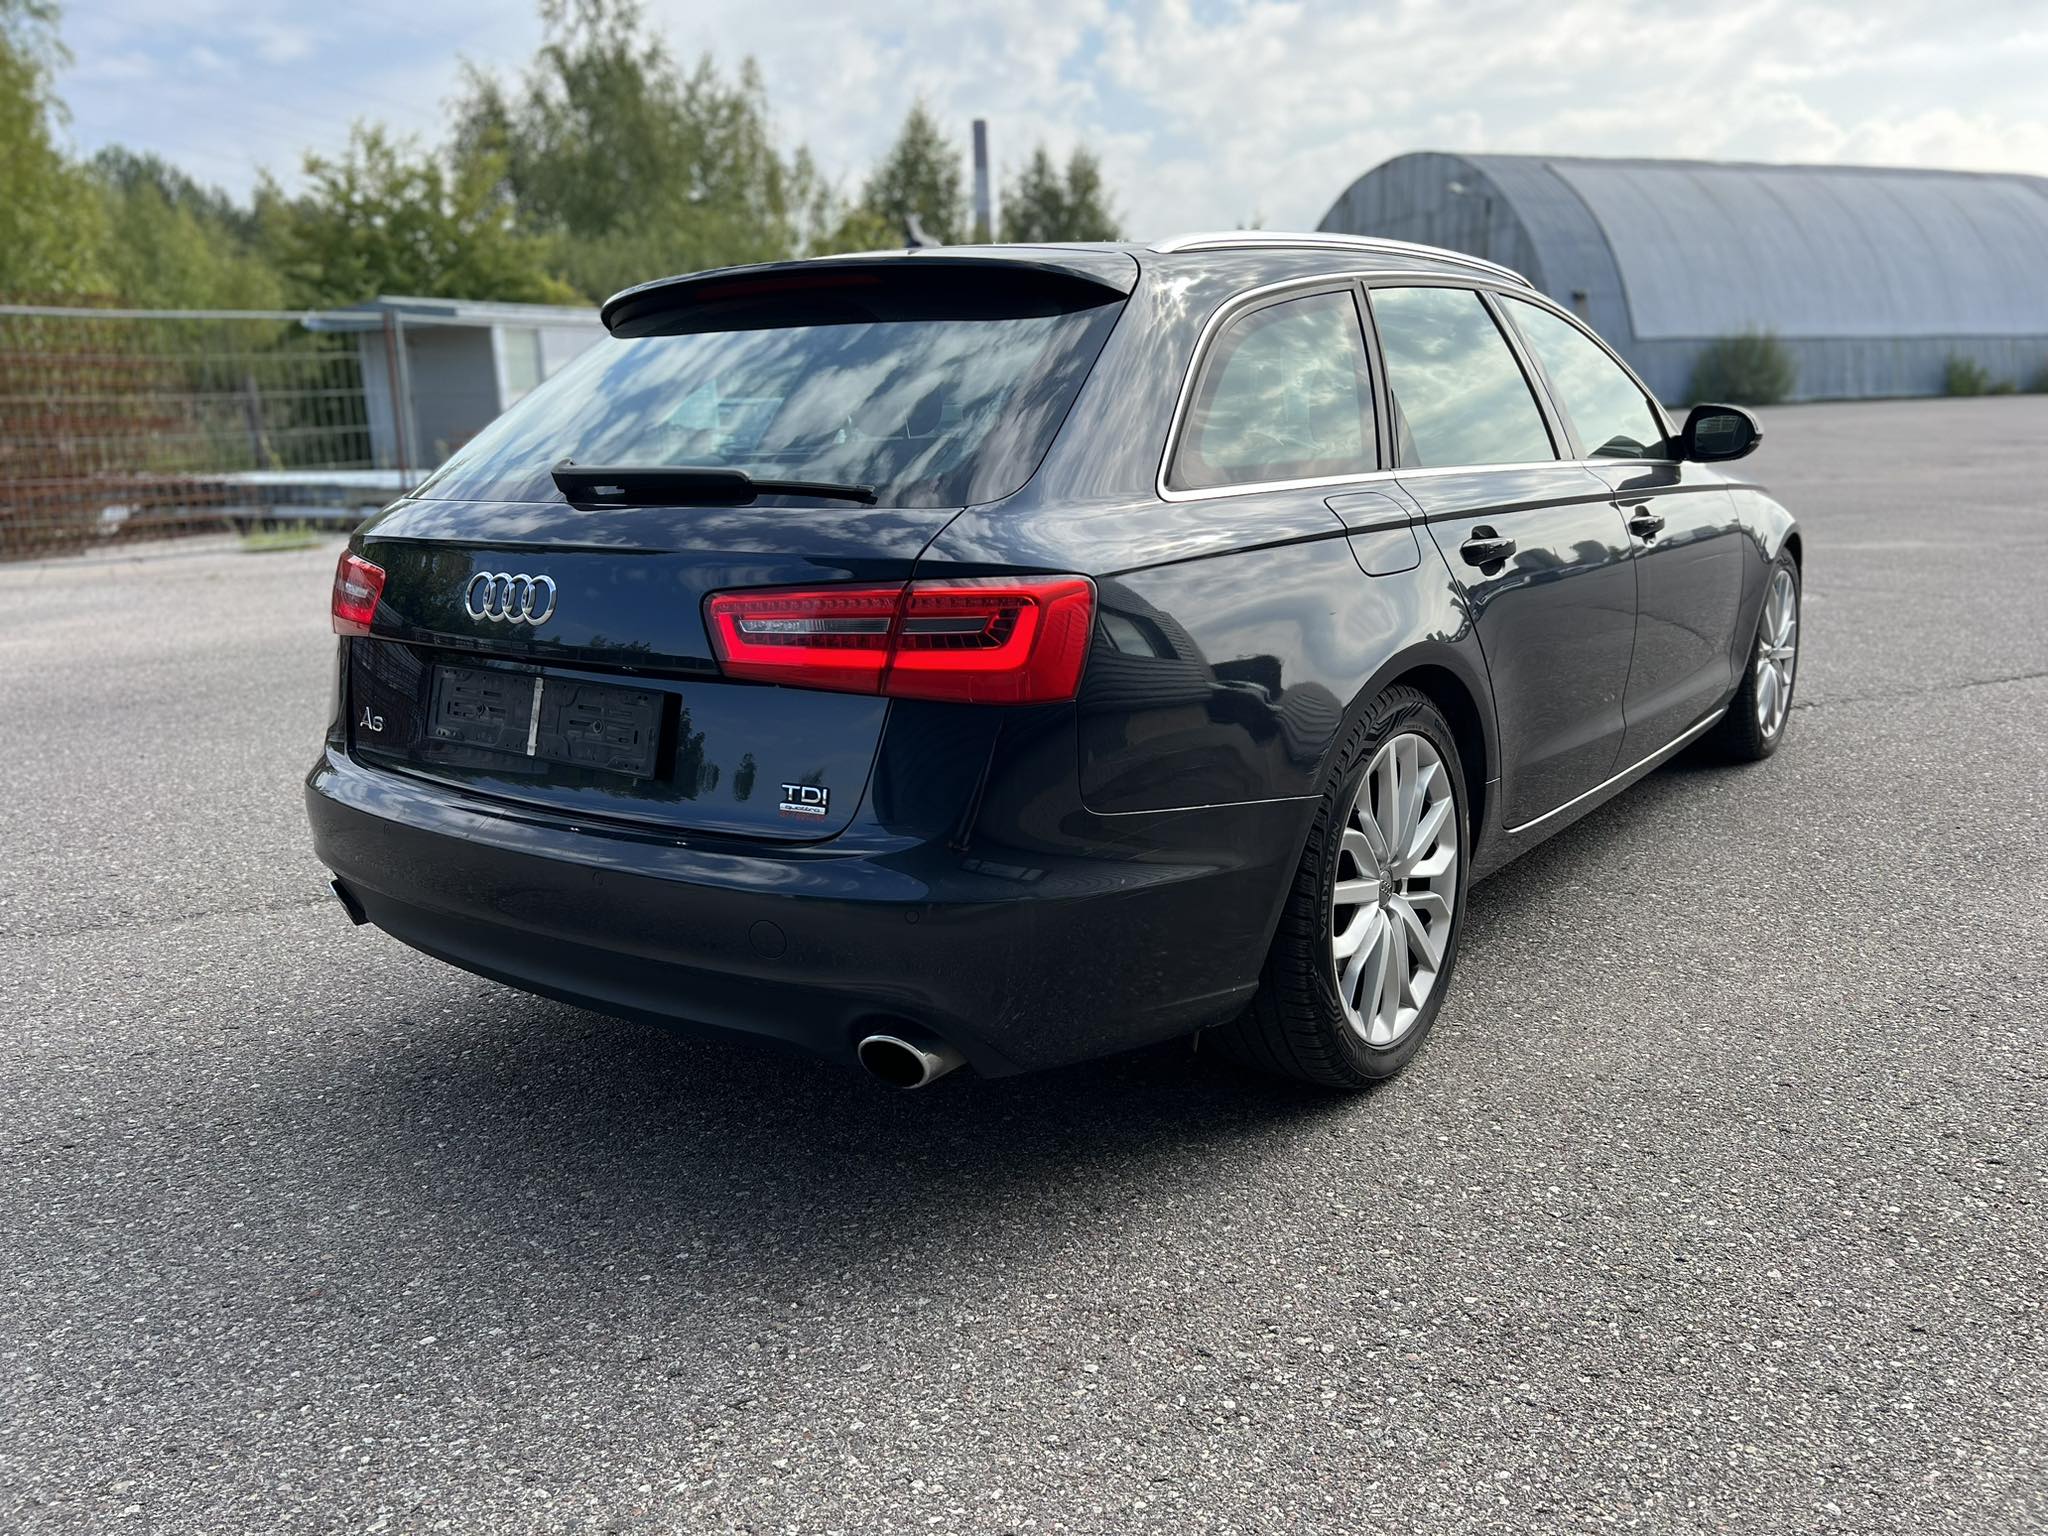 Audi A6 3.0l., universalas